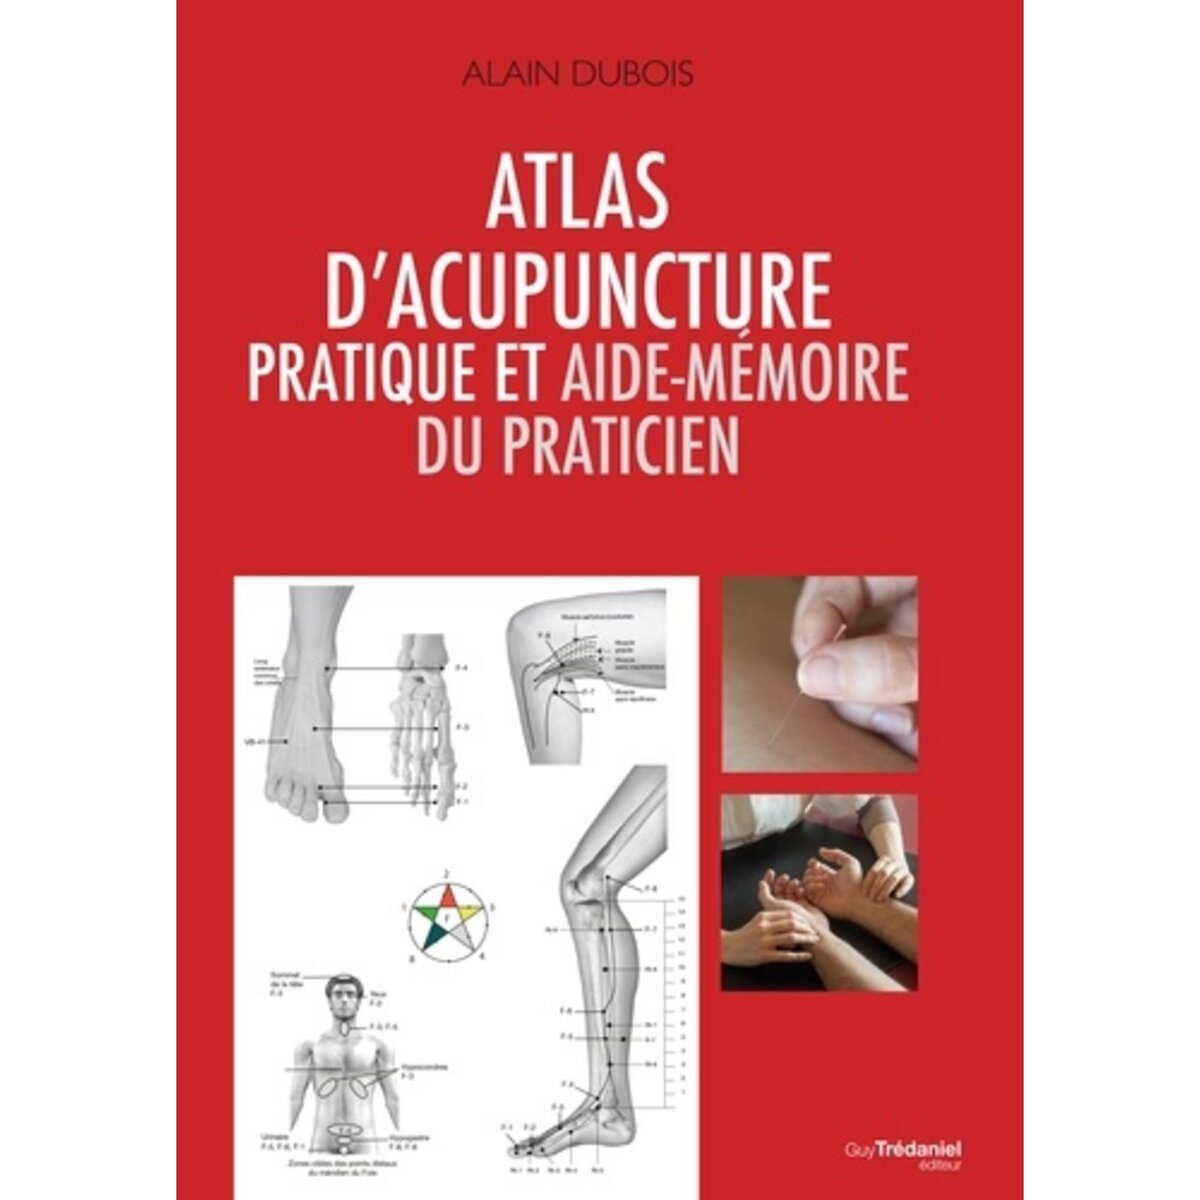  ATLAS D'ACUPUNCTURE PRATIQUE ET AIDE-MEMOIRE DU PRATICIEN, Dubois Alain